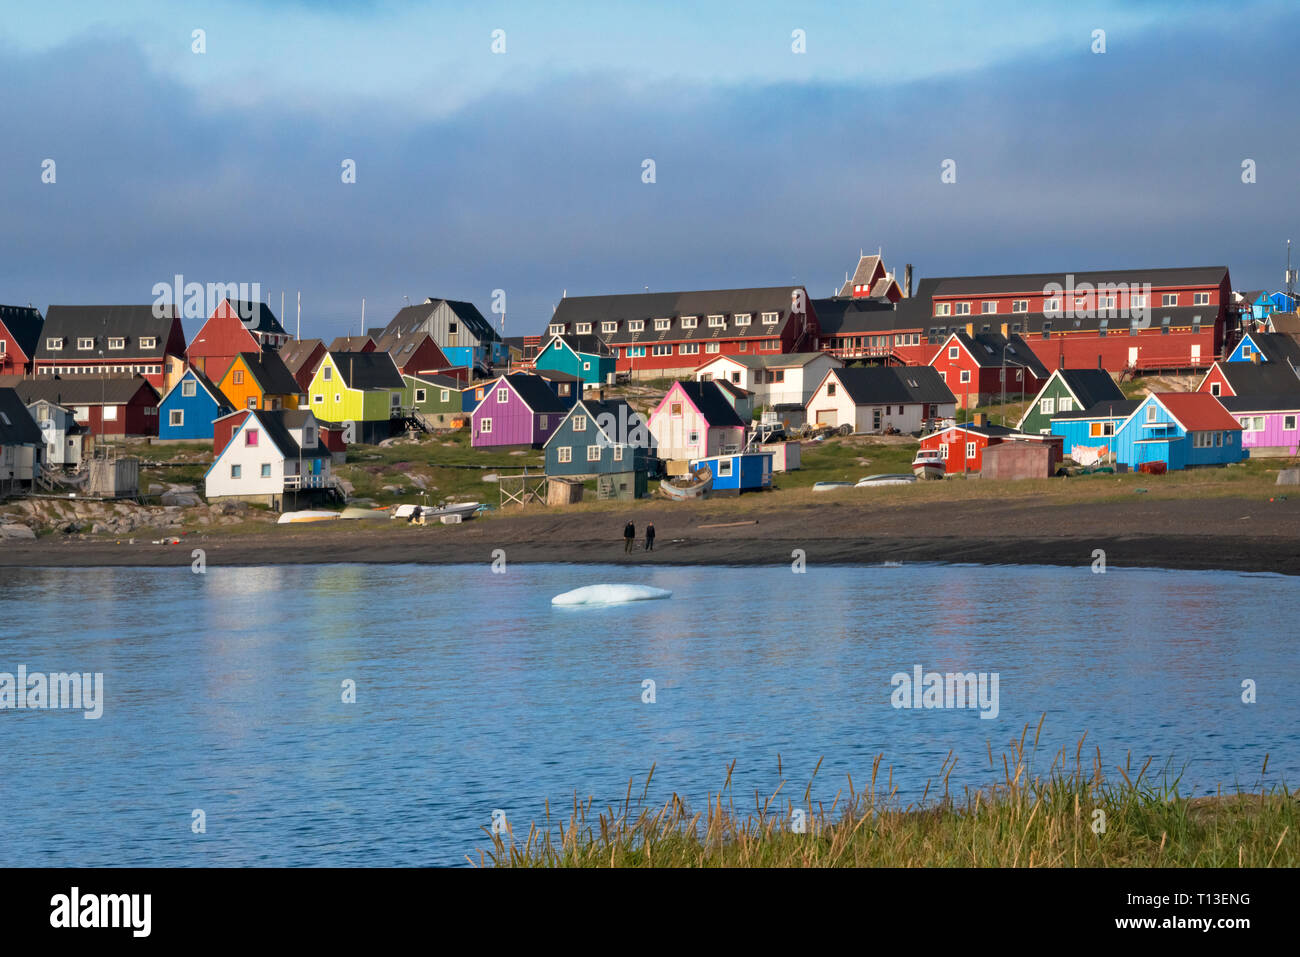 Maisons peintes de couleurs vives sur la plage, Qeqertarsuaq, Groenland Banque D'Images